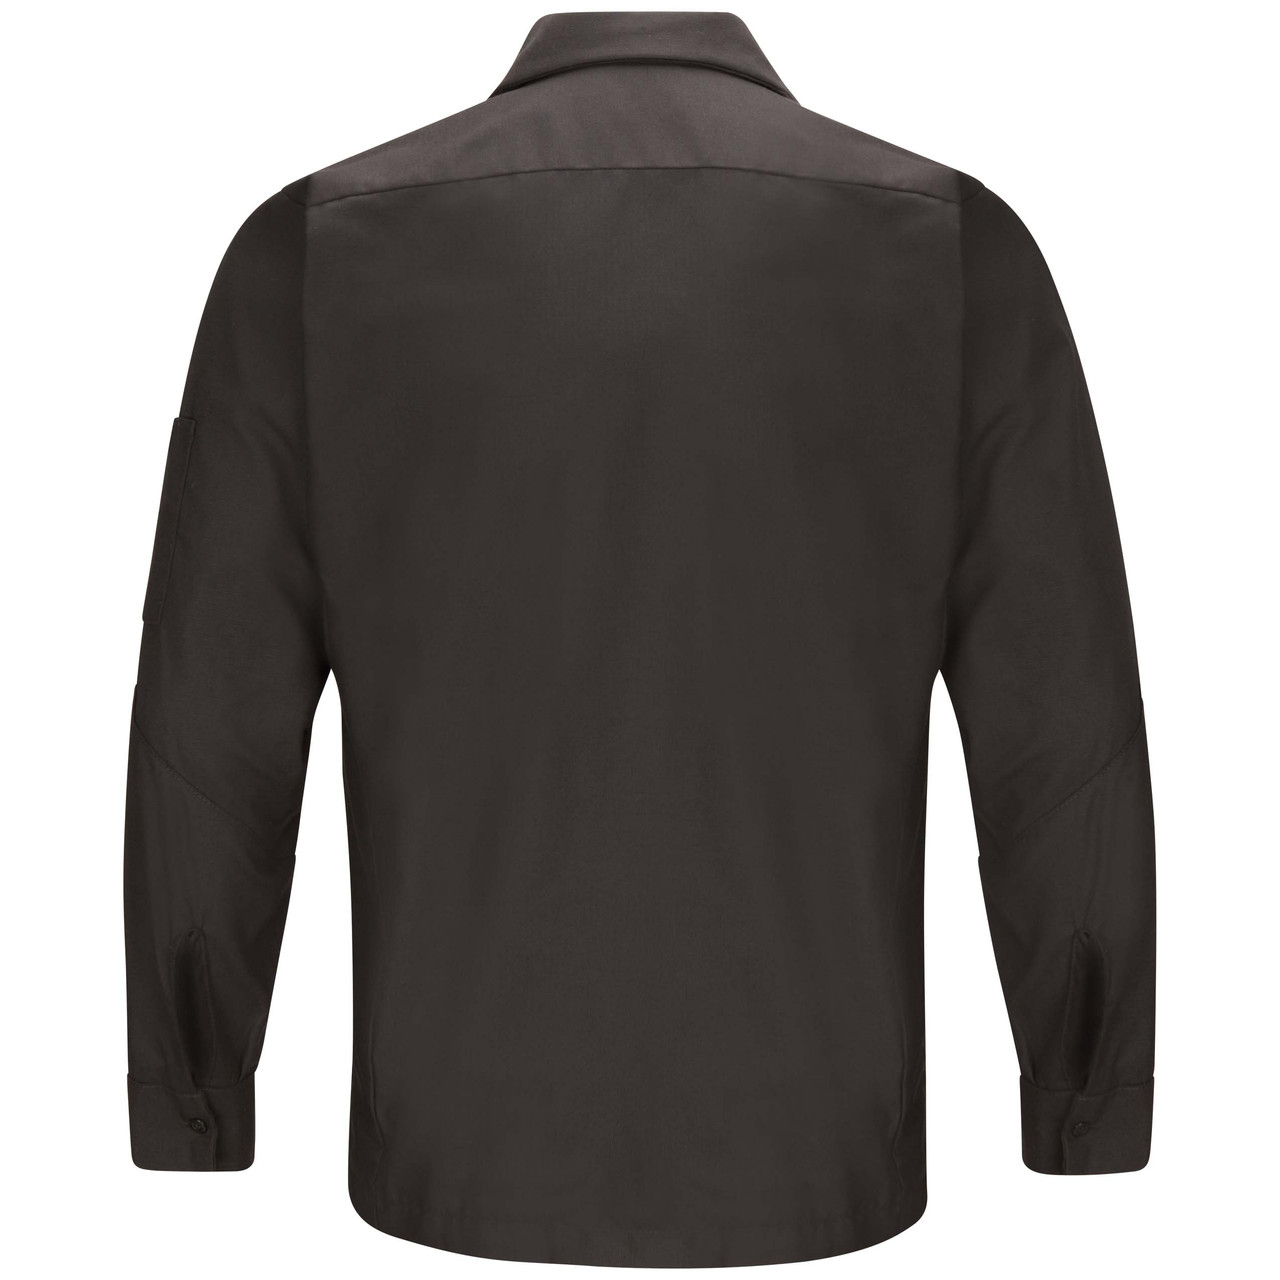 Mercedes® Technician Uniform Shirt